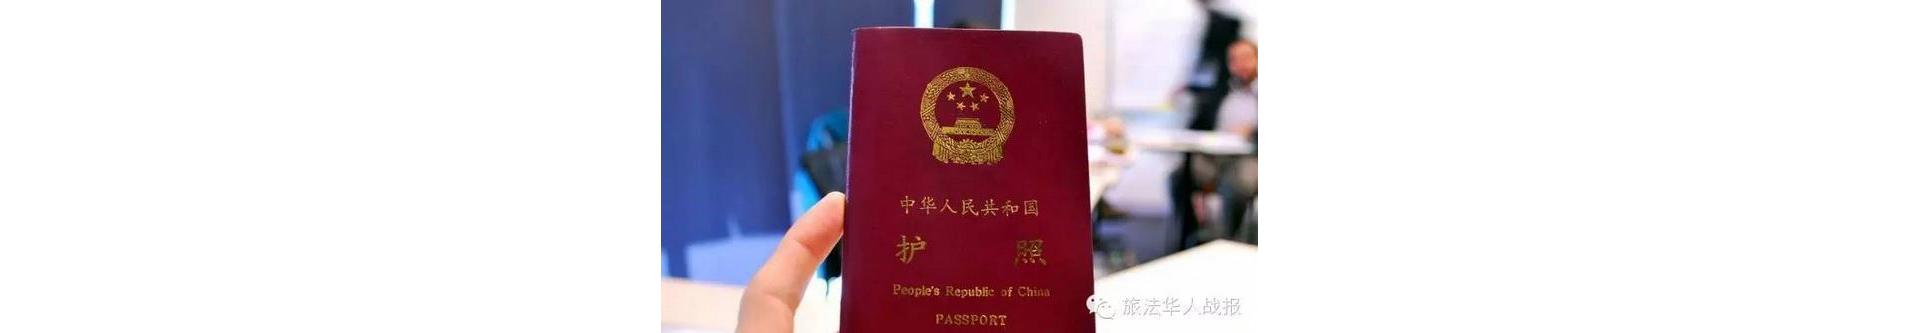 中国团体游客来法旅游的签证时限从原来的两天缩短至一天